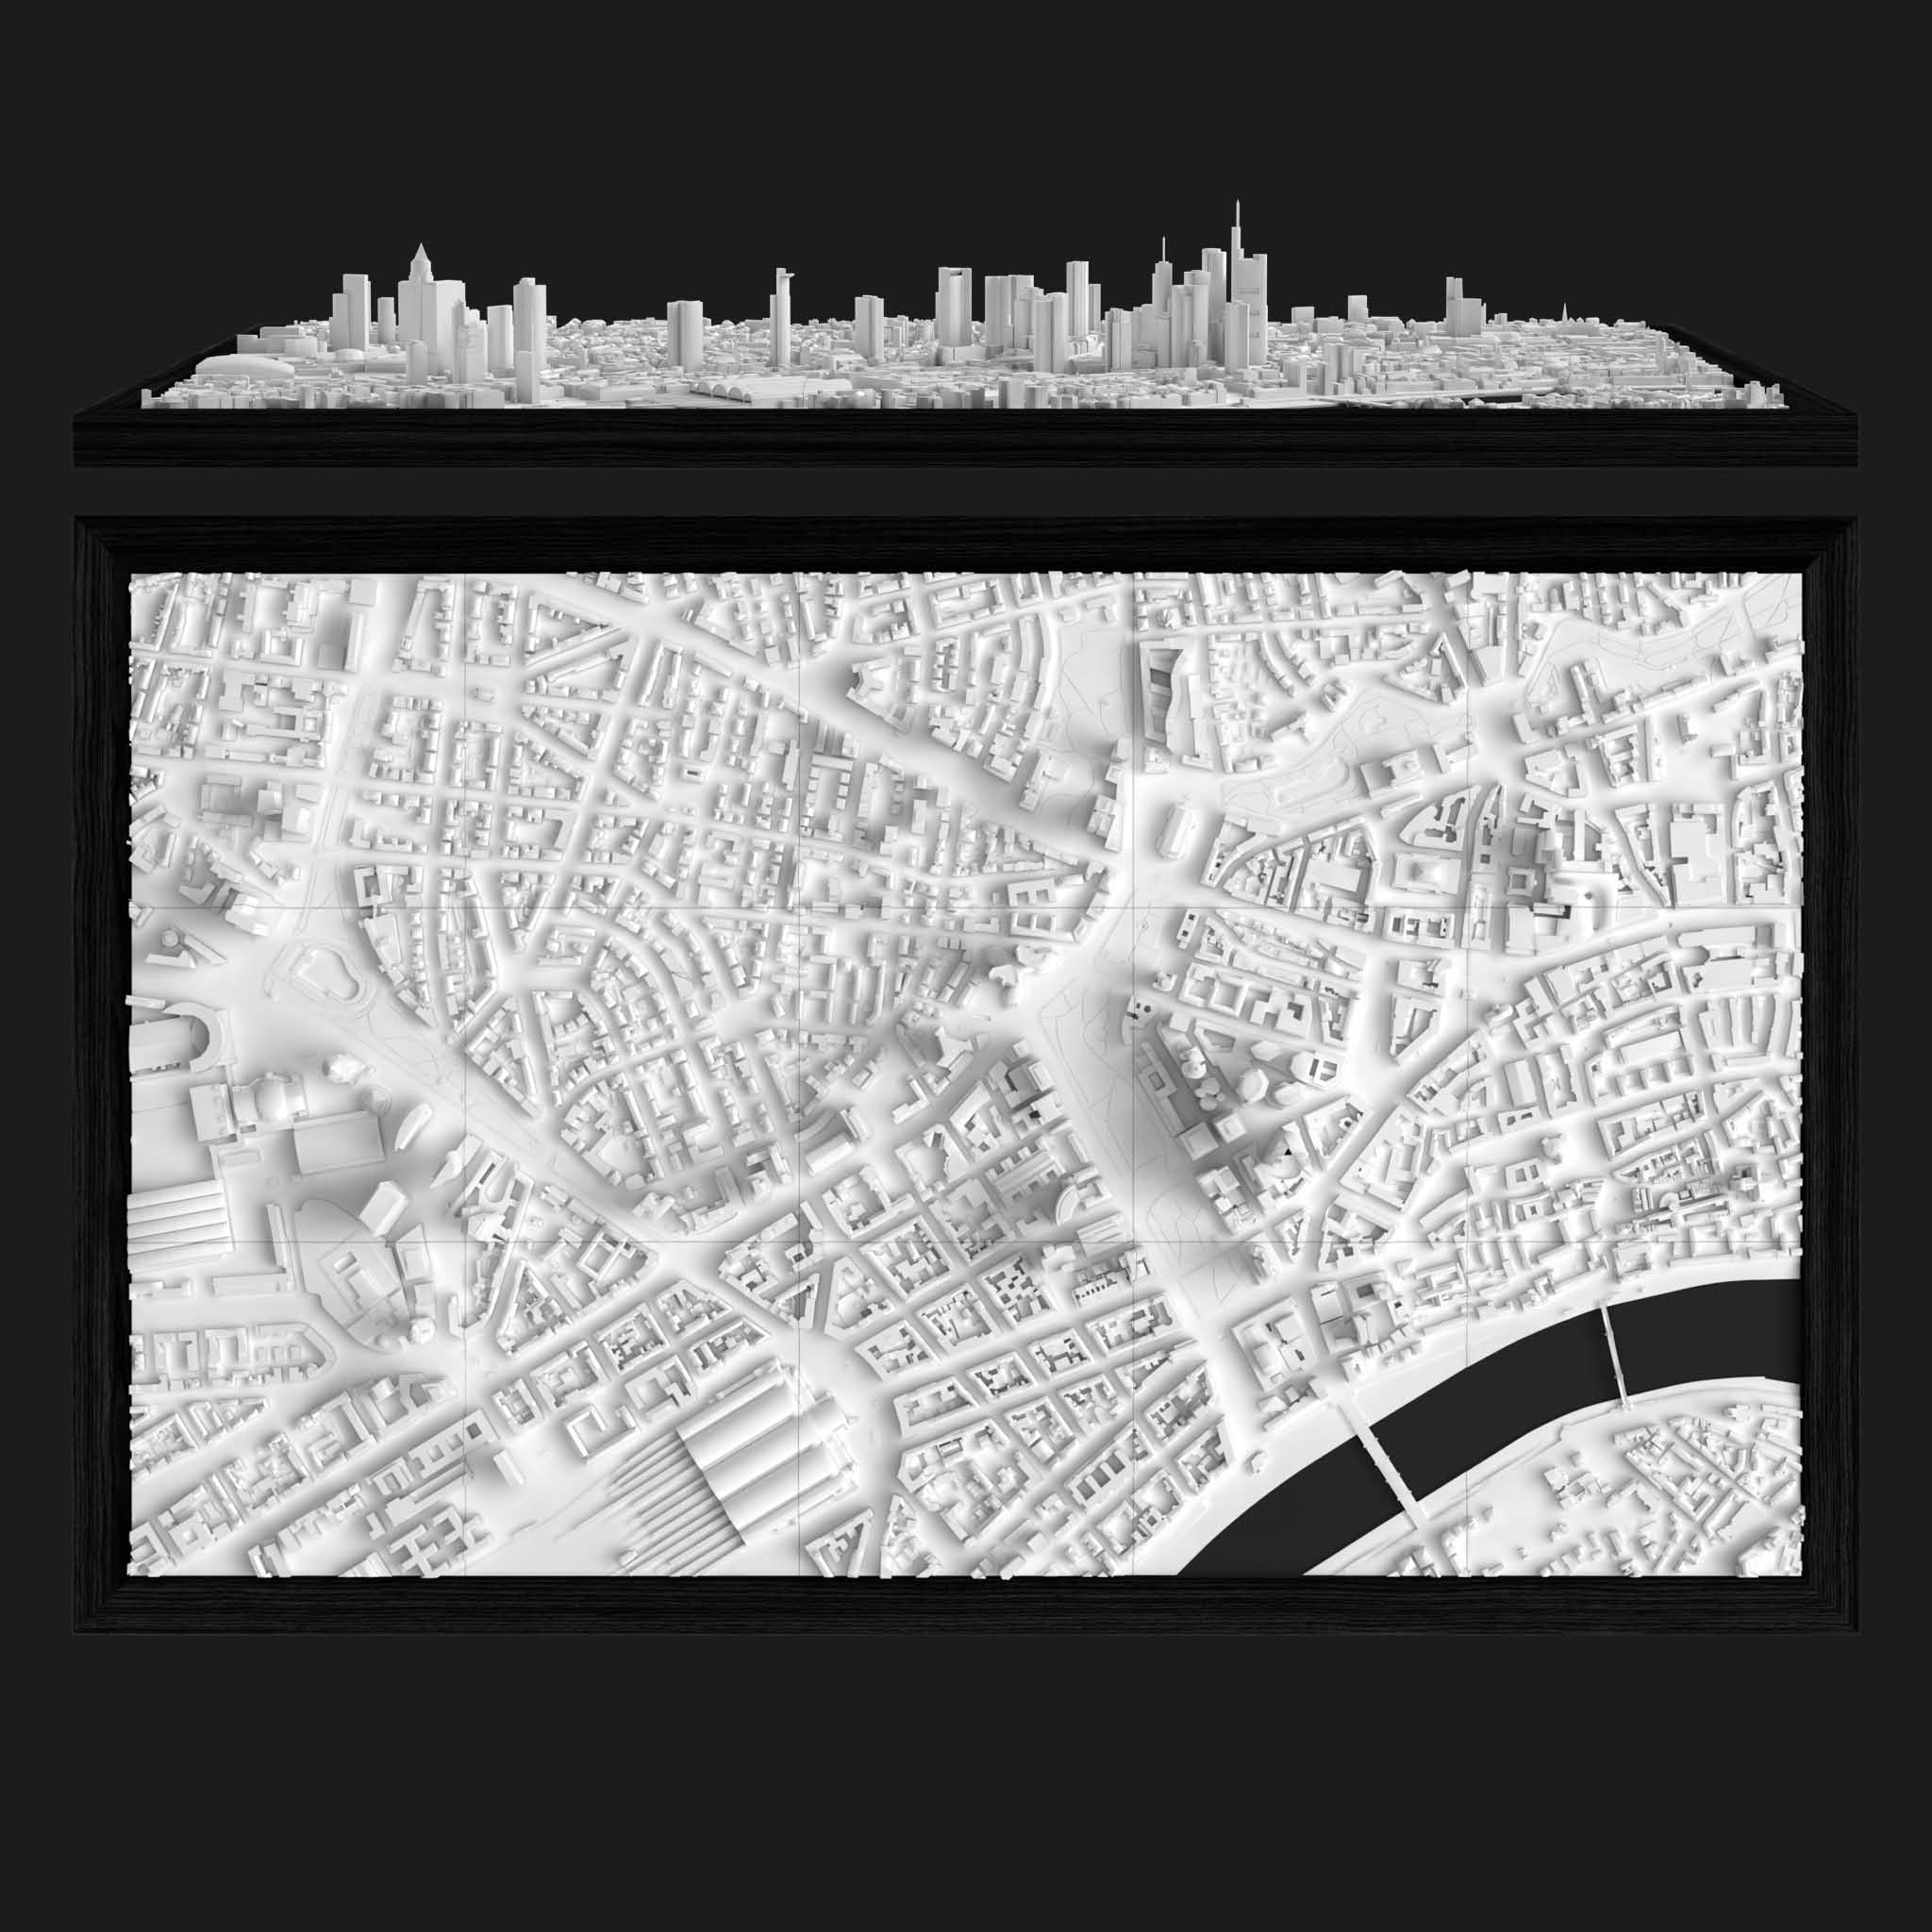 FrankfurtFrameWide - CITYFRAMES